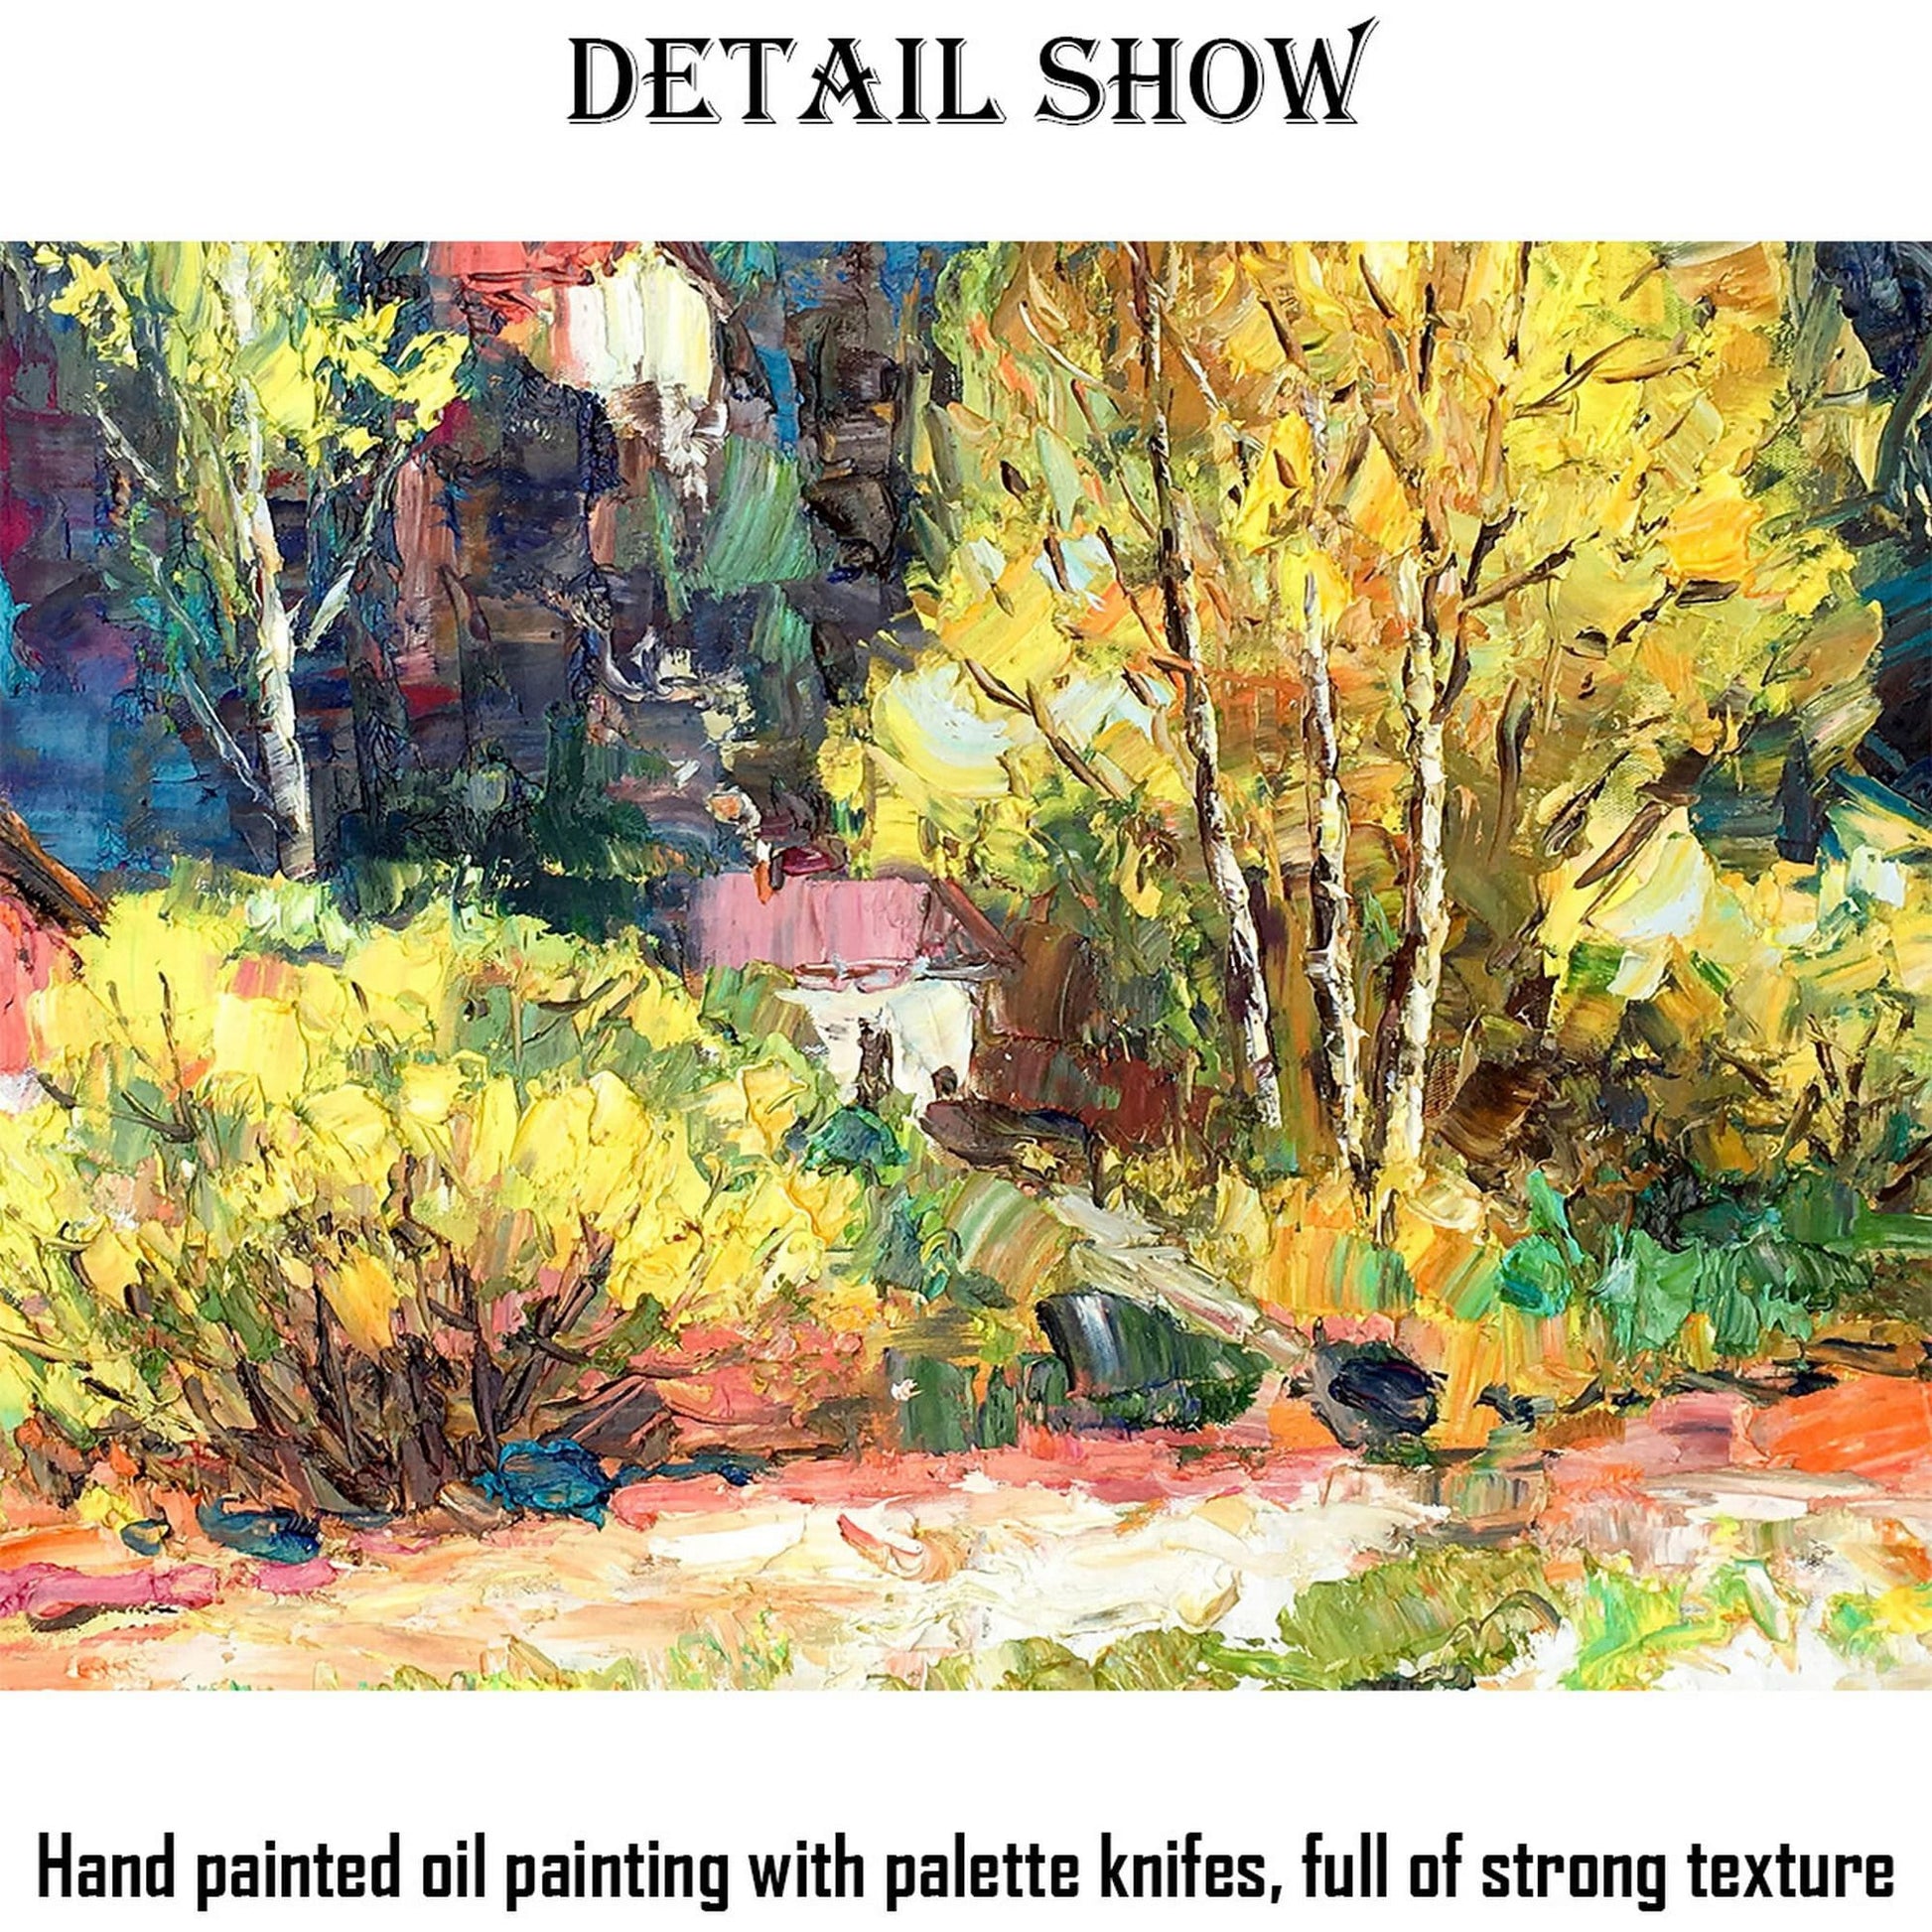 Oil Painting Autumn Forest Landscape, Large Wall Art Canvas, Abstract Oil Painting, Large Oil Painting, Oil Painting Landscape Oil Painting